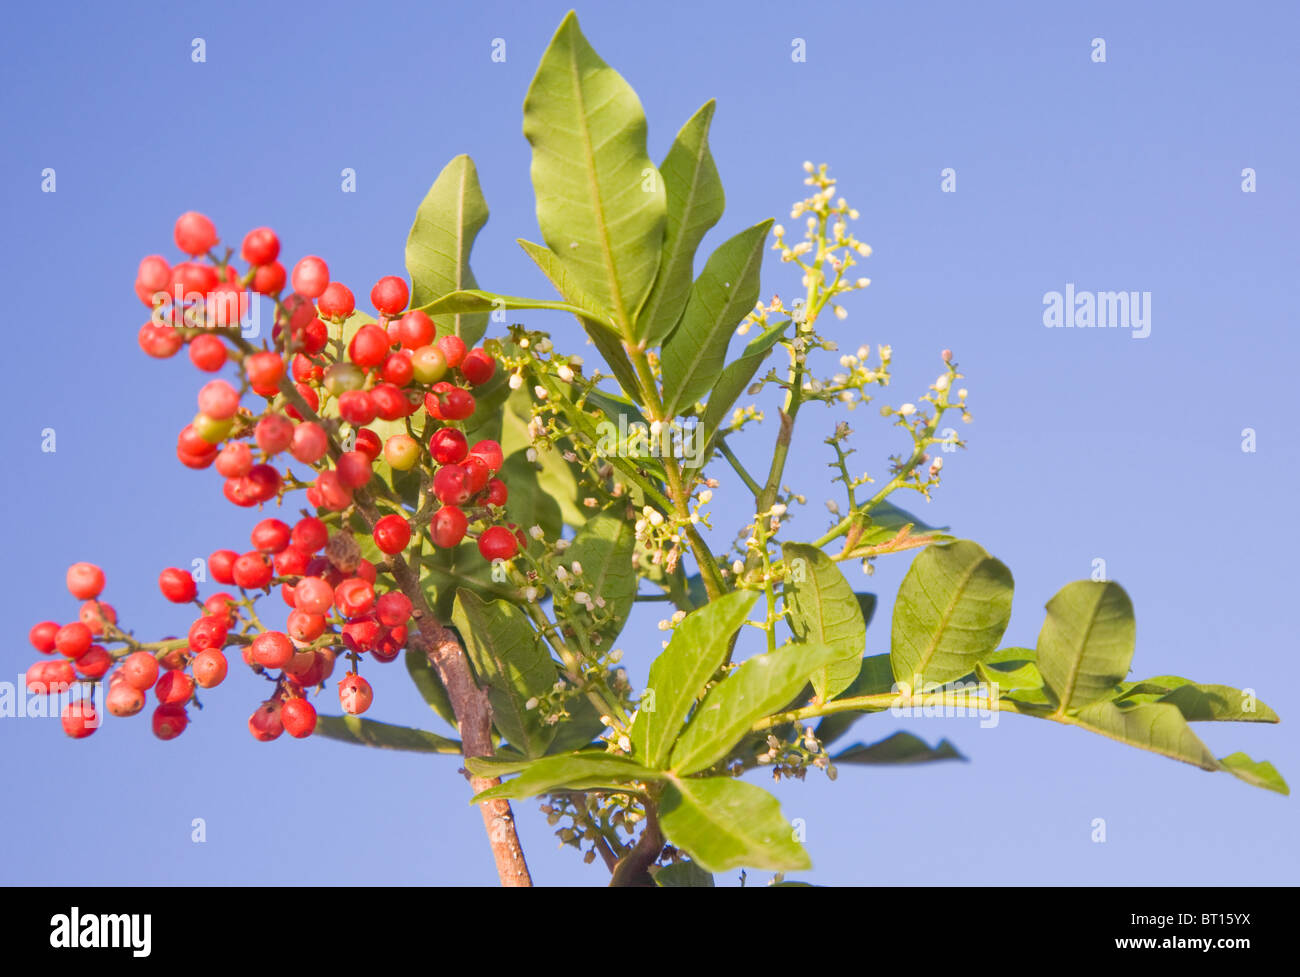 Falso pepe o Schinus terebinthifolius in fiore con bacche rosse Foto Stock